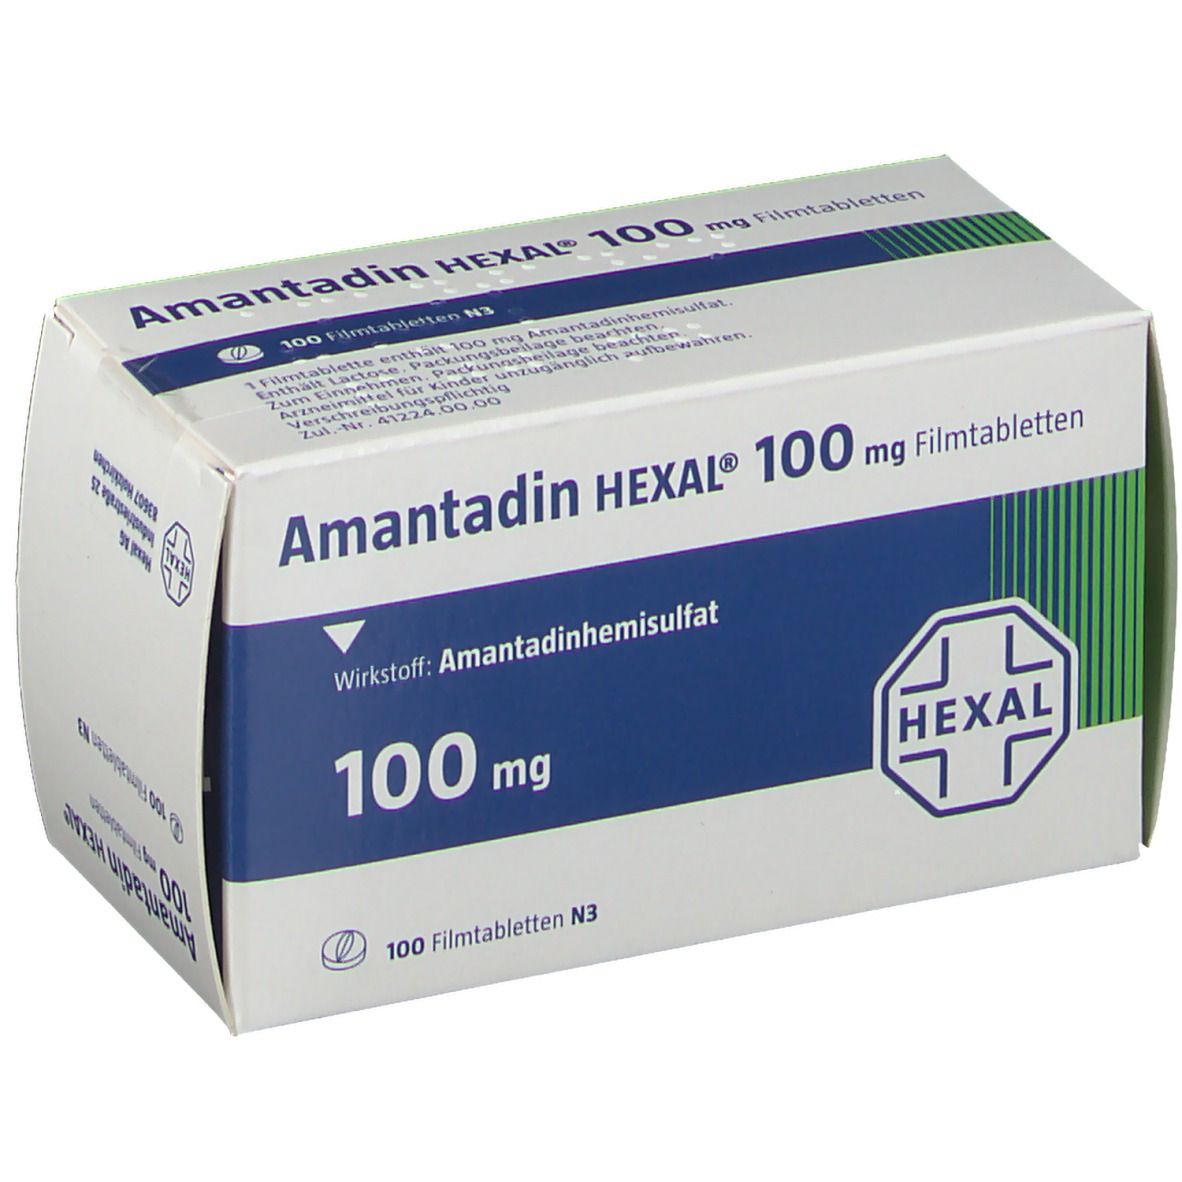 Amantadin HEXAL® 100 mg